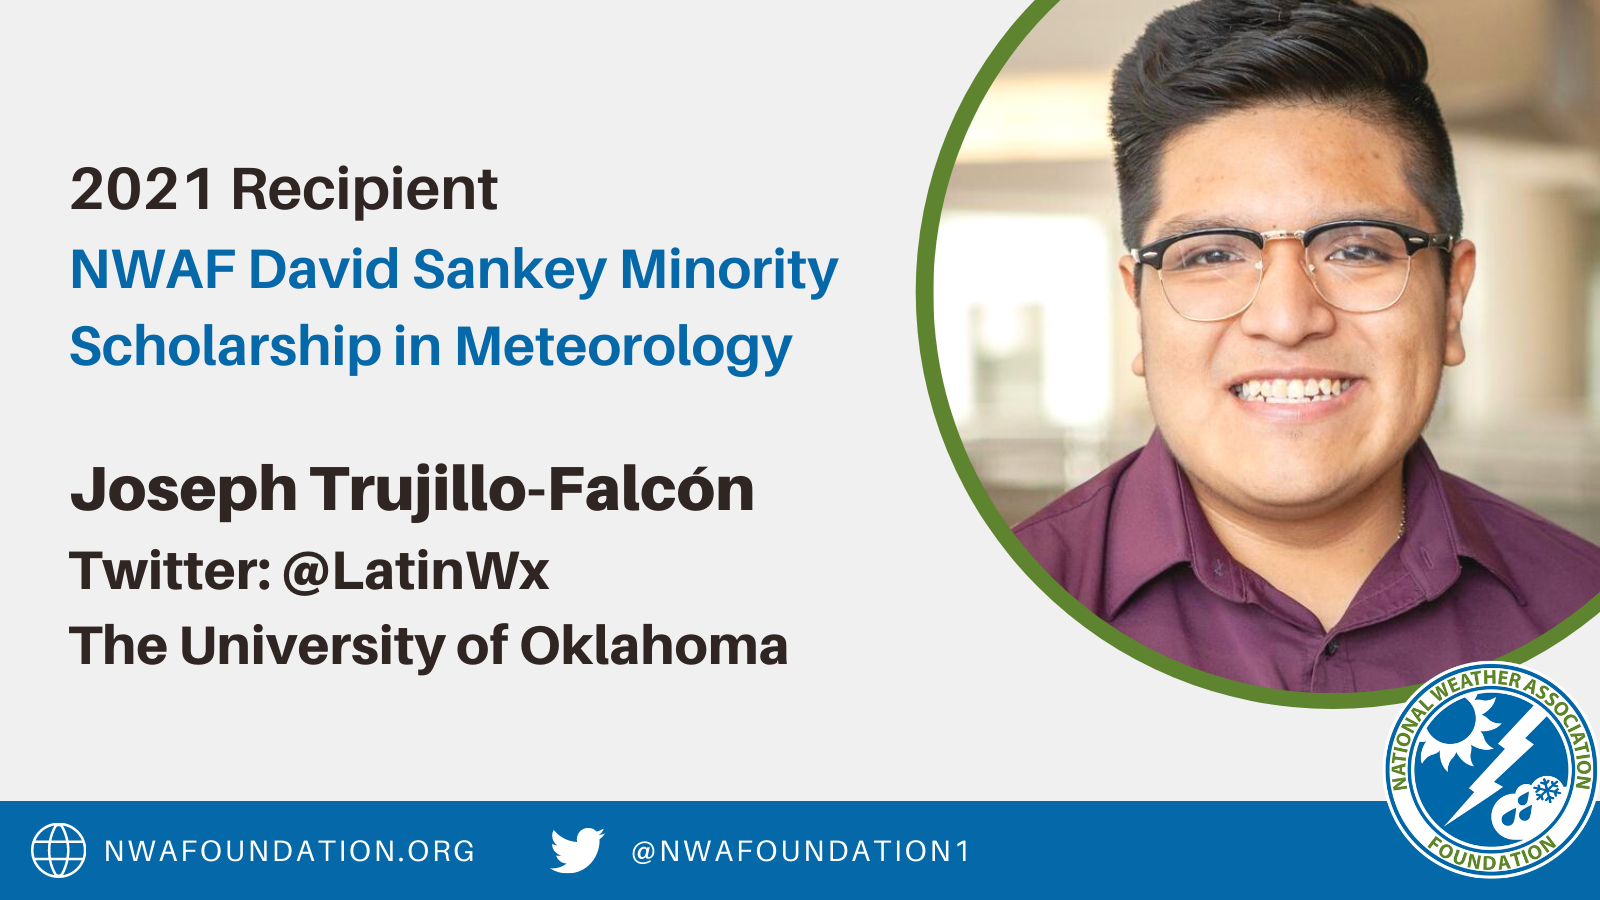 Joseph Trujillo-Falcon NWAF David Sankey Minority Scholarship in Meteorology Winner